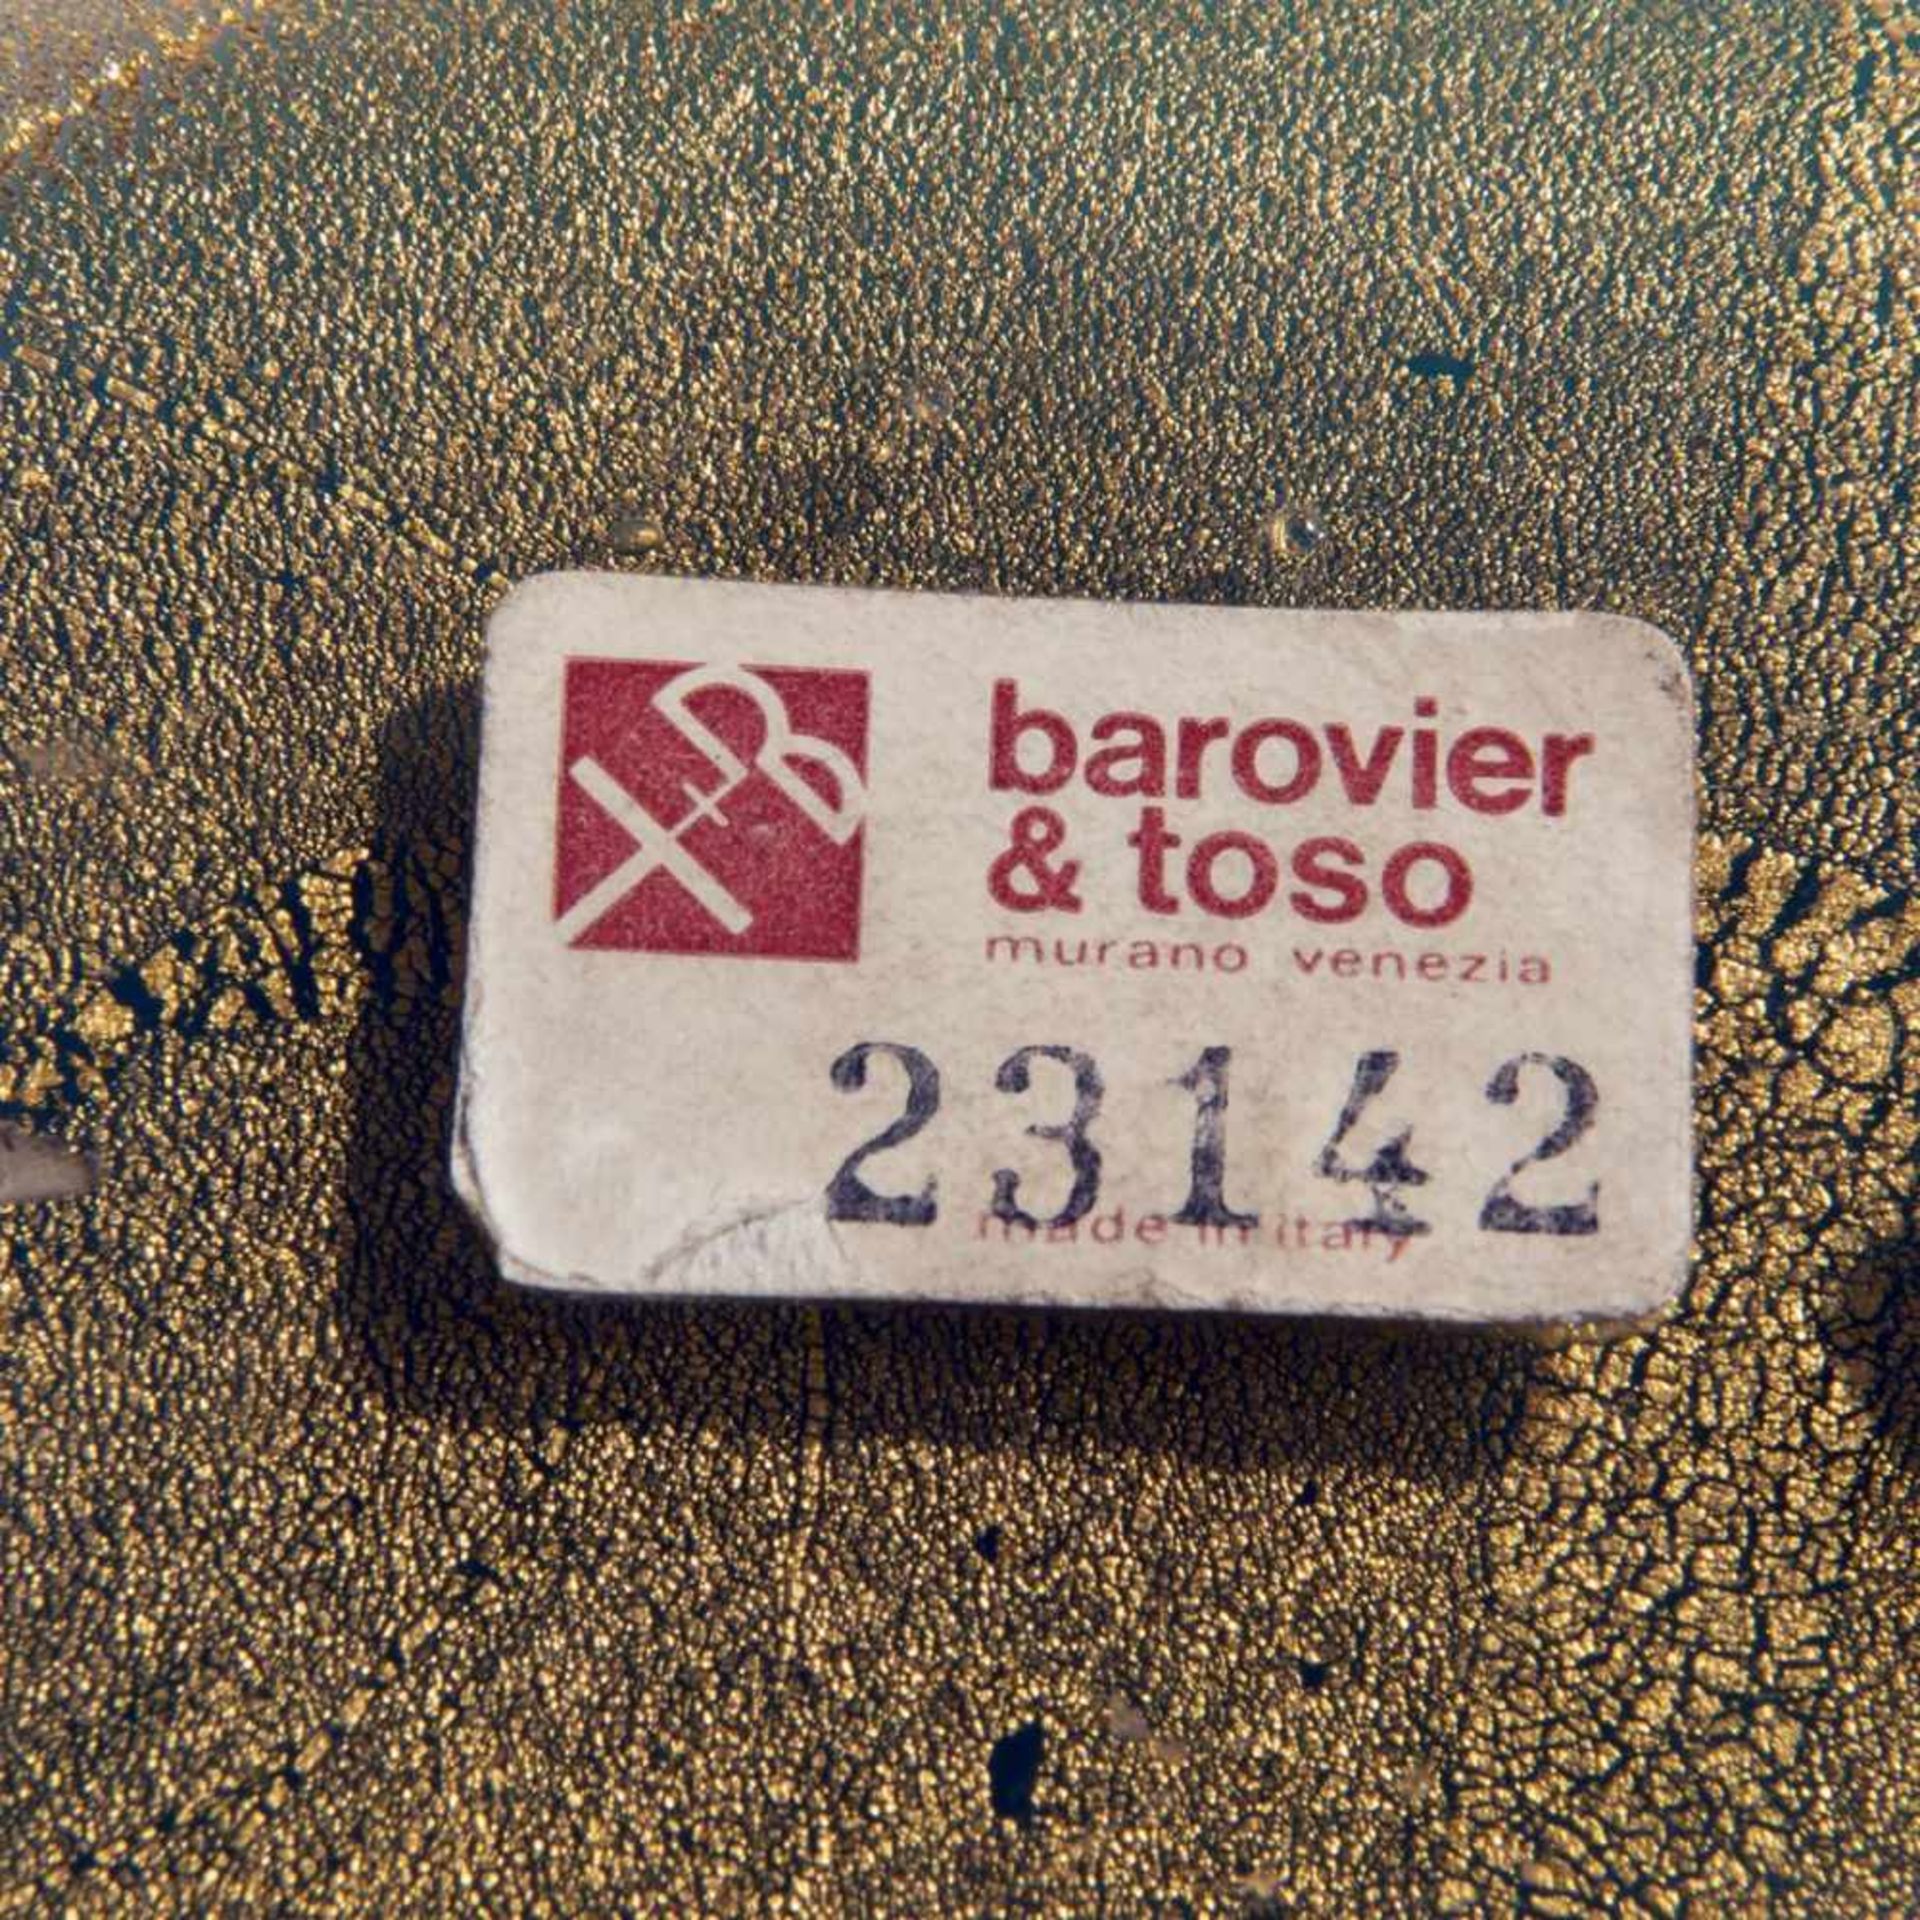 Barovier & Toso, Murano, Door handle, c. 1965 - Bild 2 aus 2